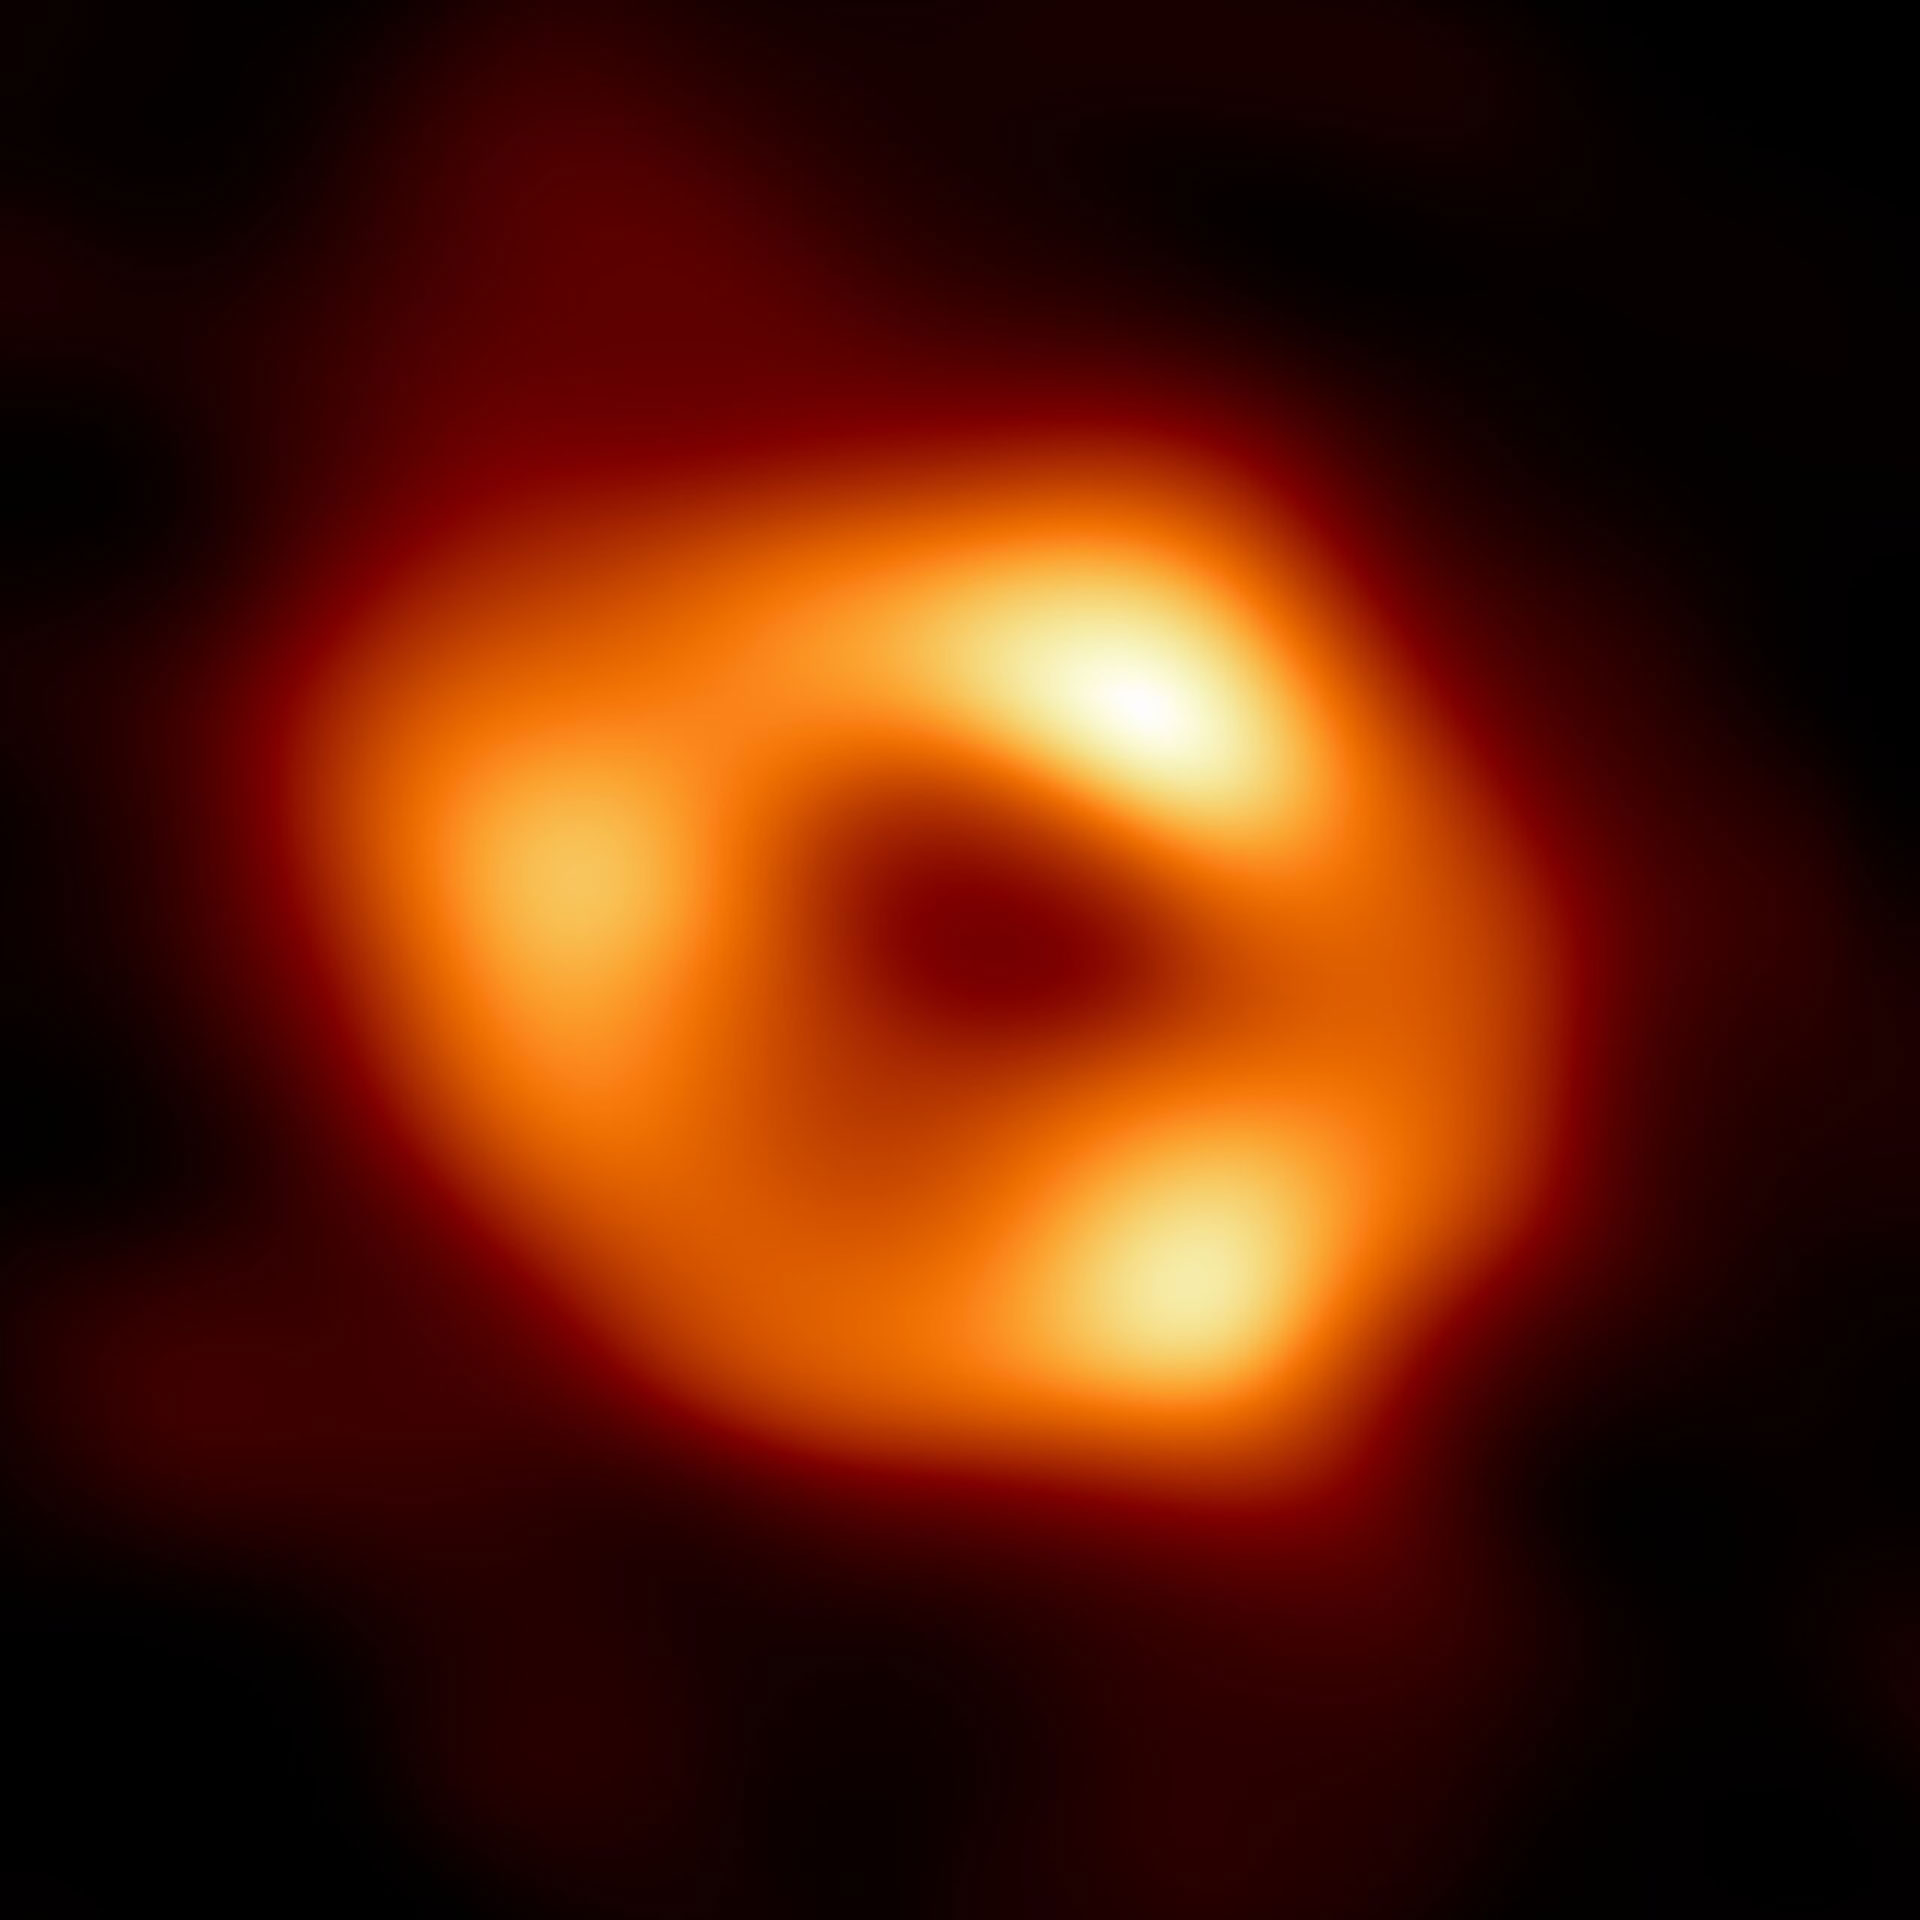 Primera fotografía del agujero negro supermasivo del centro de nuestra galaxia, la Vía Láctea, conocido como Sagitario A. (EHT Collaboration)